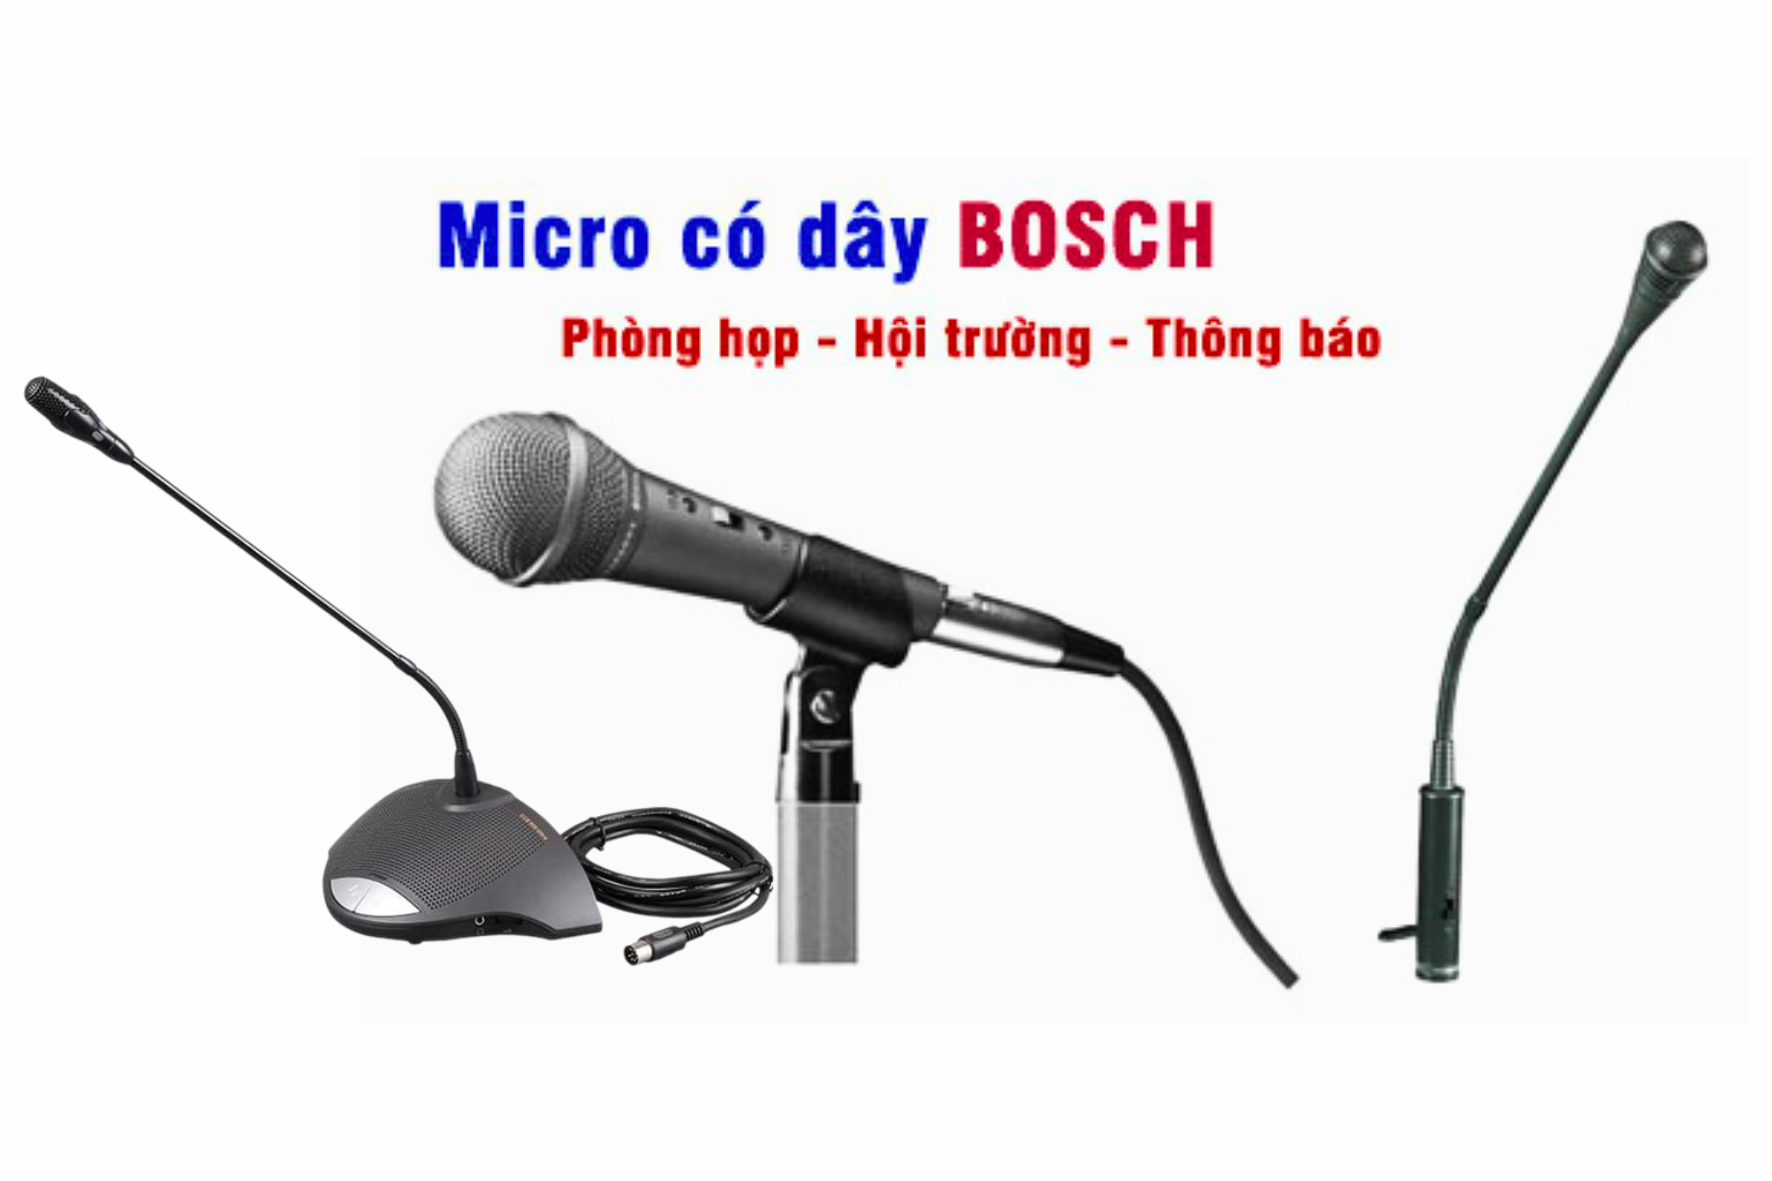 Micro phòng họp có dây Bosch được đánh giá là có kiểu dáng sang trọng, bắt tín hiệu tốt, phù hợp dùng trong nhiều không gian phòng họp khác nhau